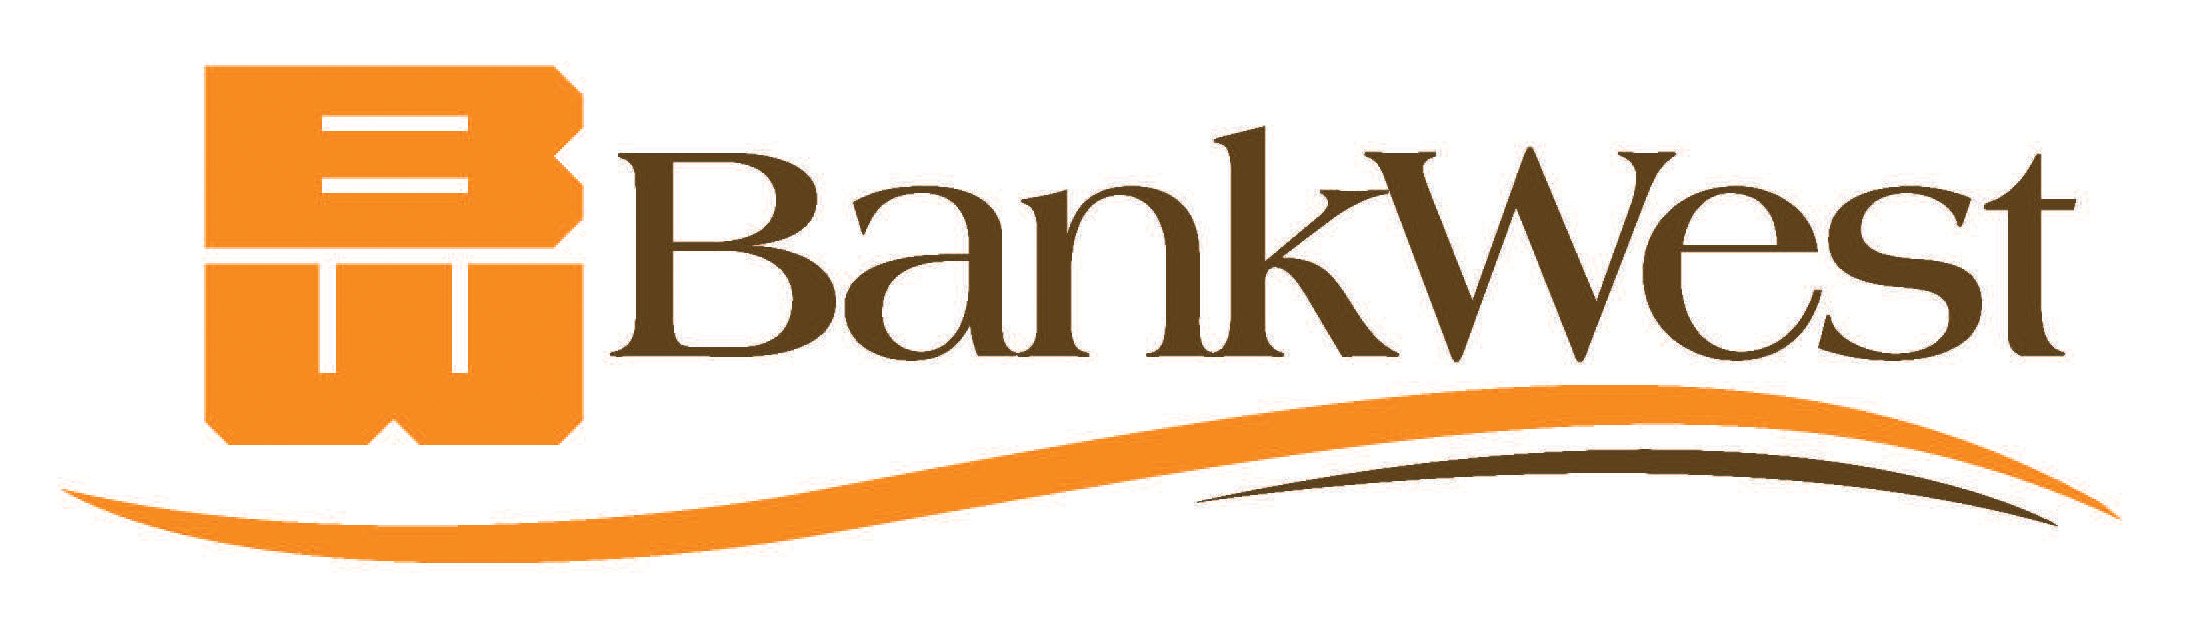 BankWest.jpg